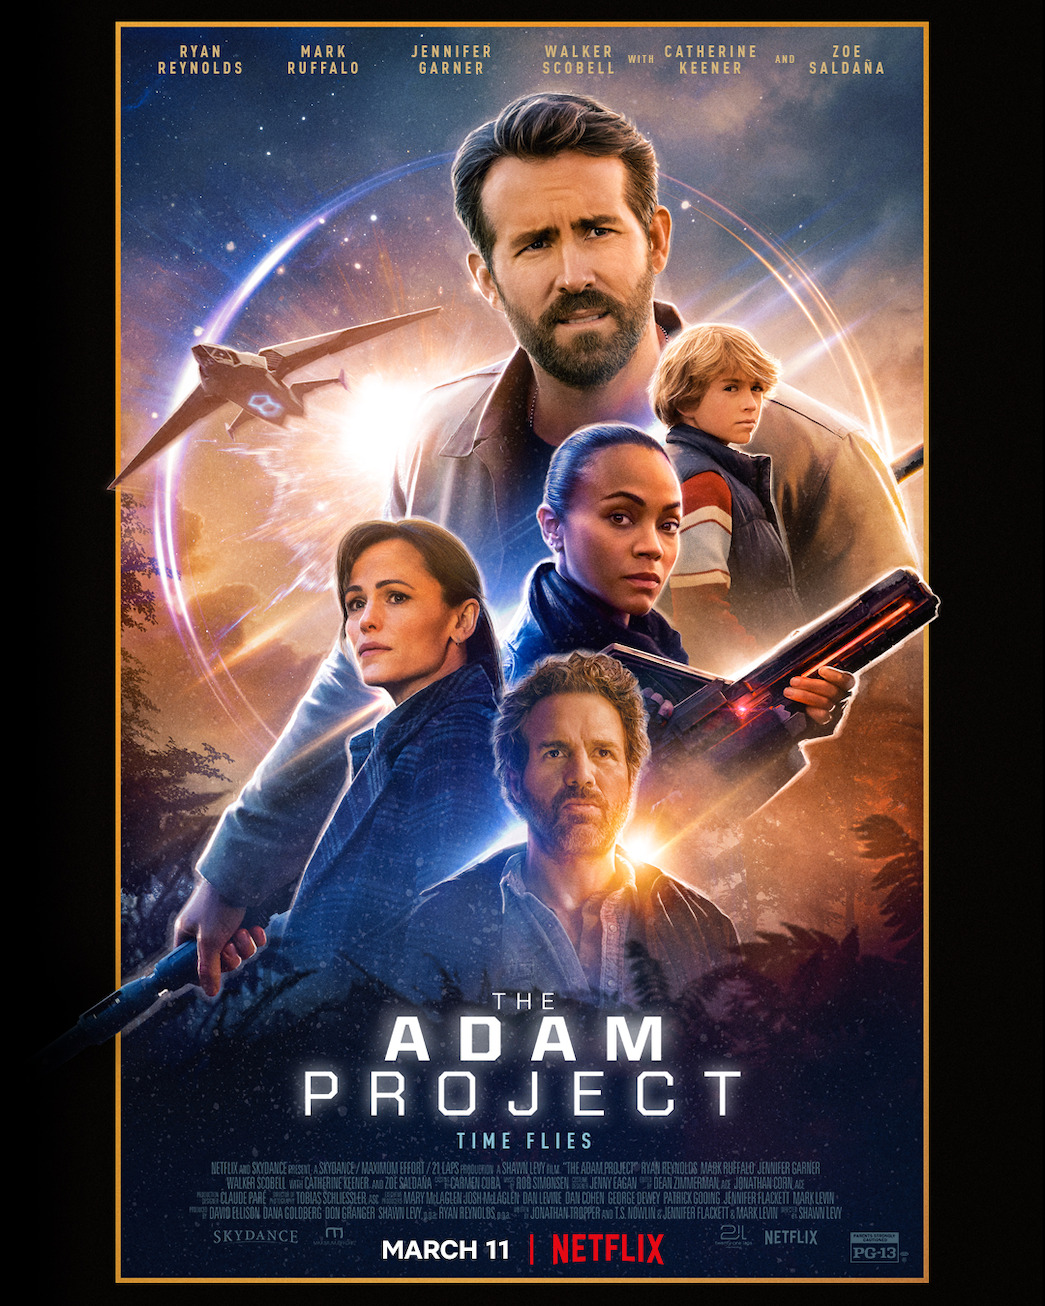 The Adam Project' Trailer: WATCH - Netflix Tudum